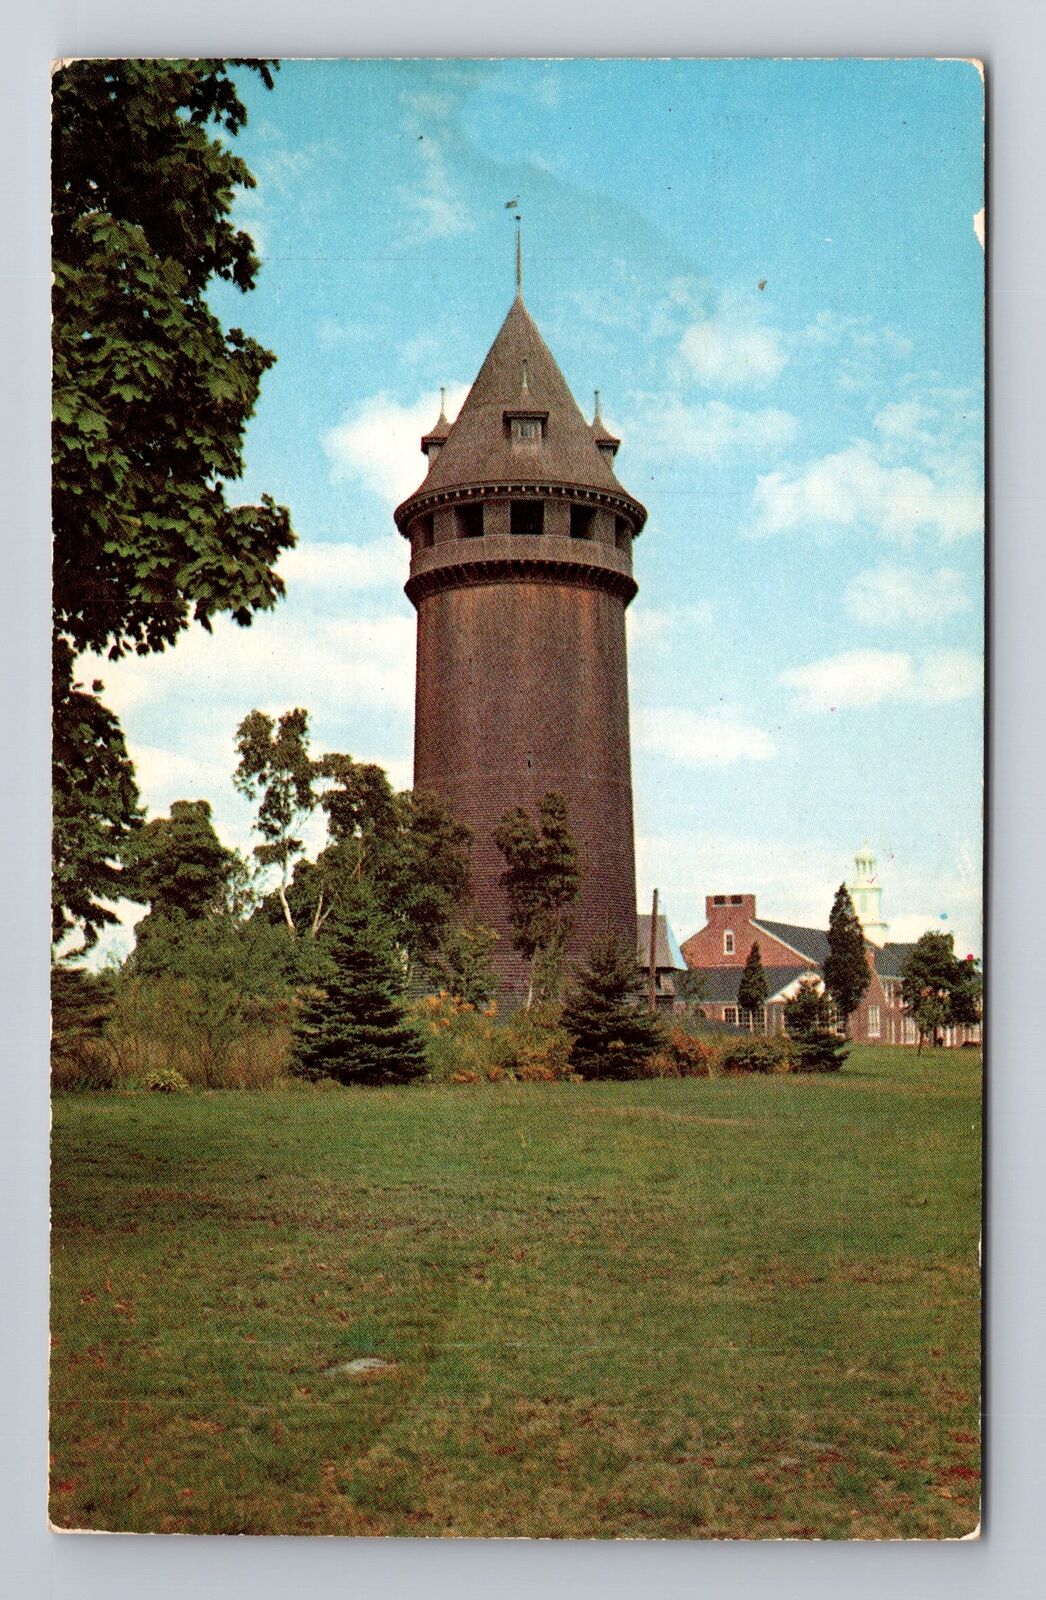 Scituate MA-Massachusetts, Lawson Tower, Antique, Vintage Souvenir Postcard